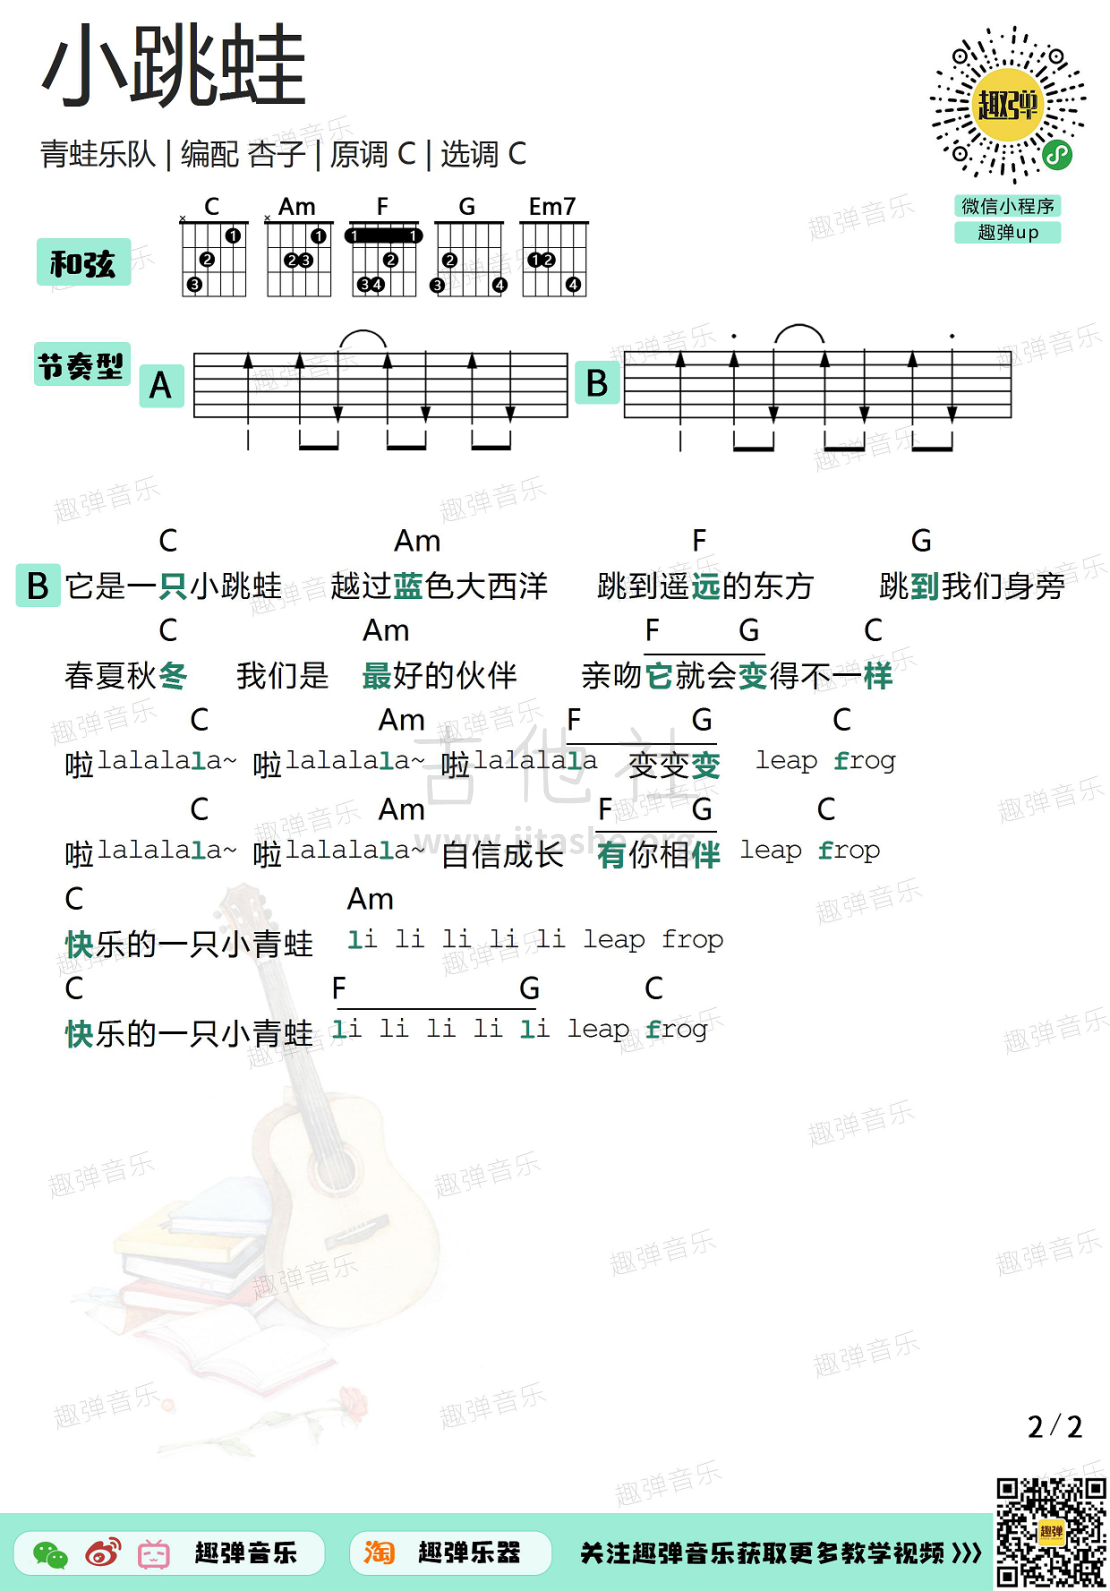 打印:小跳蛙（高清C调和弦谱）吉他谱_青蛙_小跳蛙22.jpg